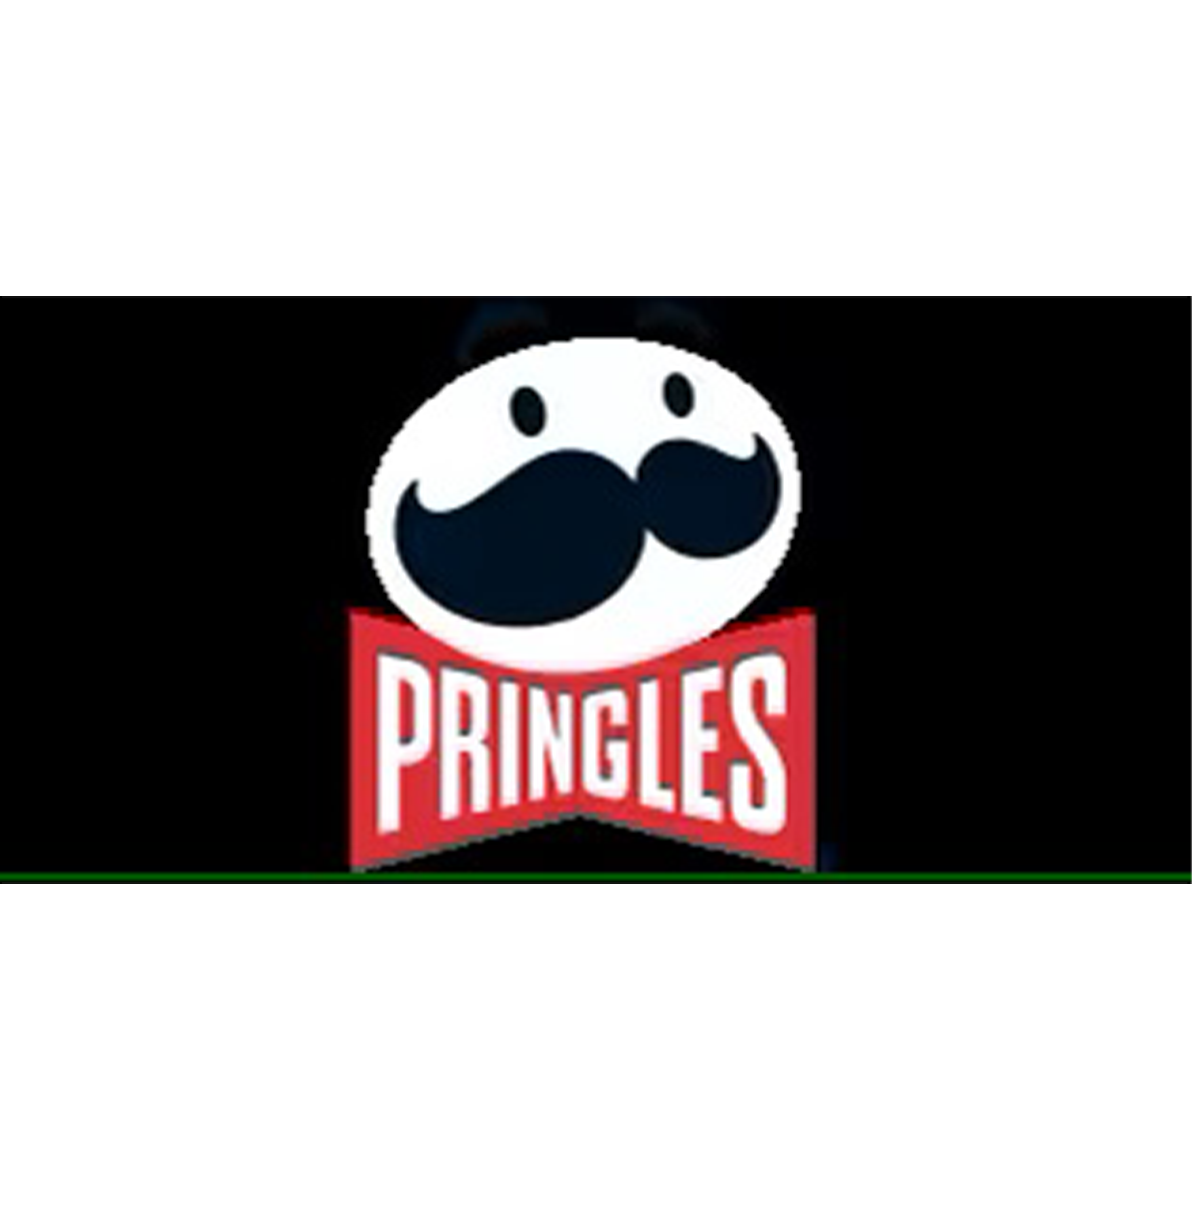 Pringle’s